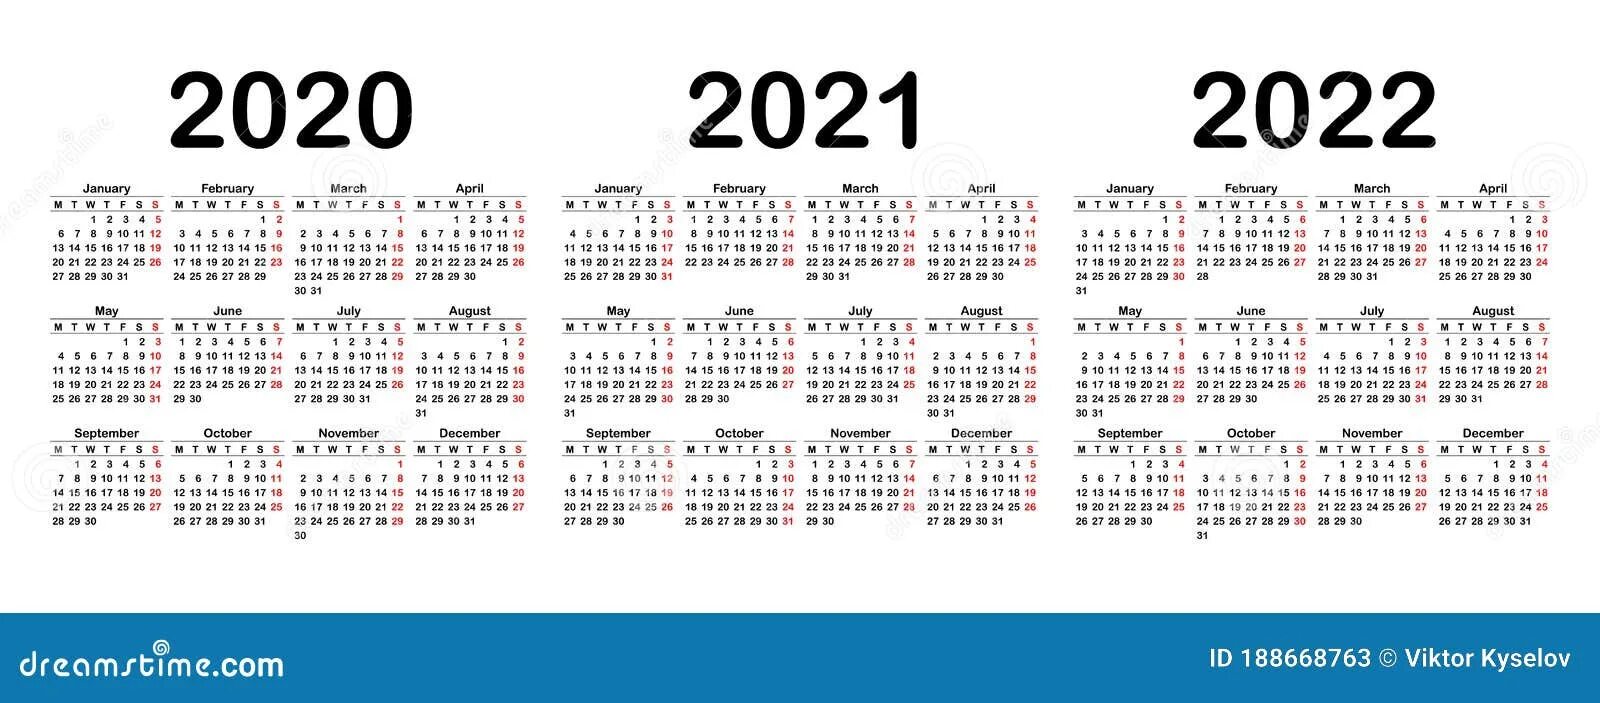 Рабочие недели 2021 года. Календарь 2020 2021 2022. Календарь 2021-2022гг. Календари 2020, 2021 и 2022 годов. Календарь с номерами недель 2022.